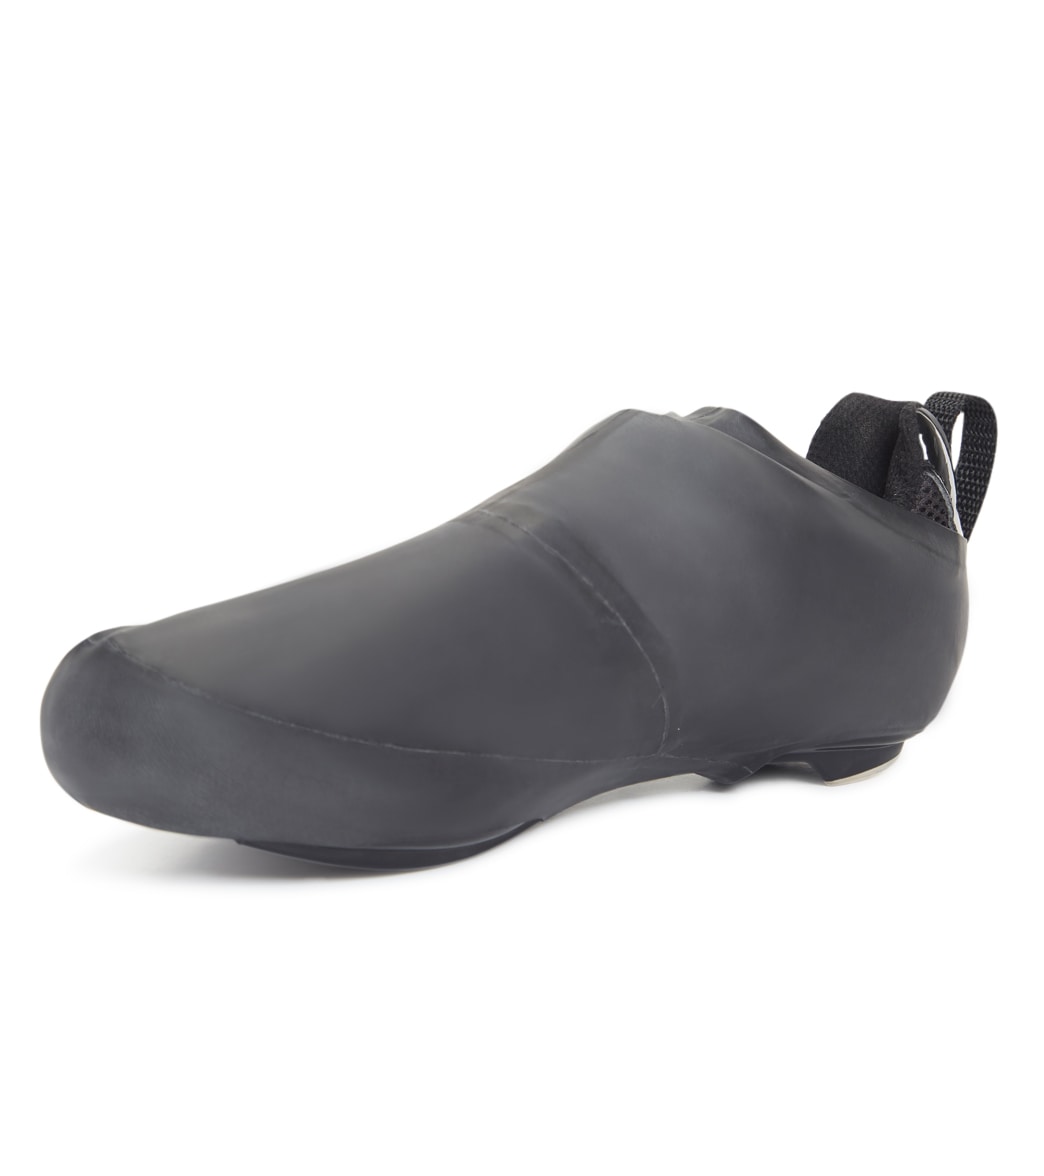 Orca Aero Shoe Cover - Black X-Small/Small - Swimoutlet.com